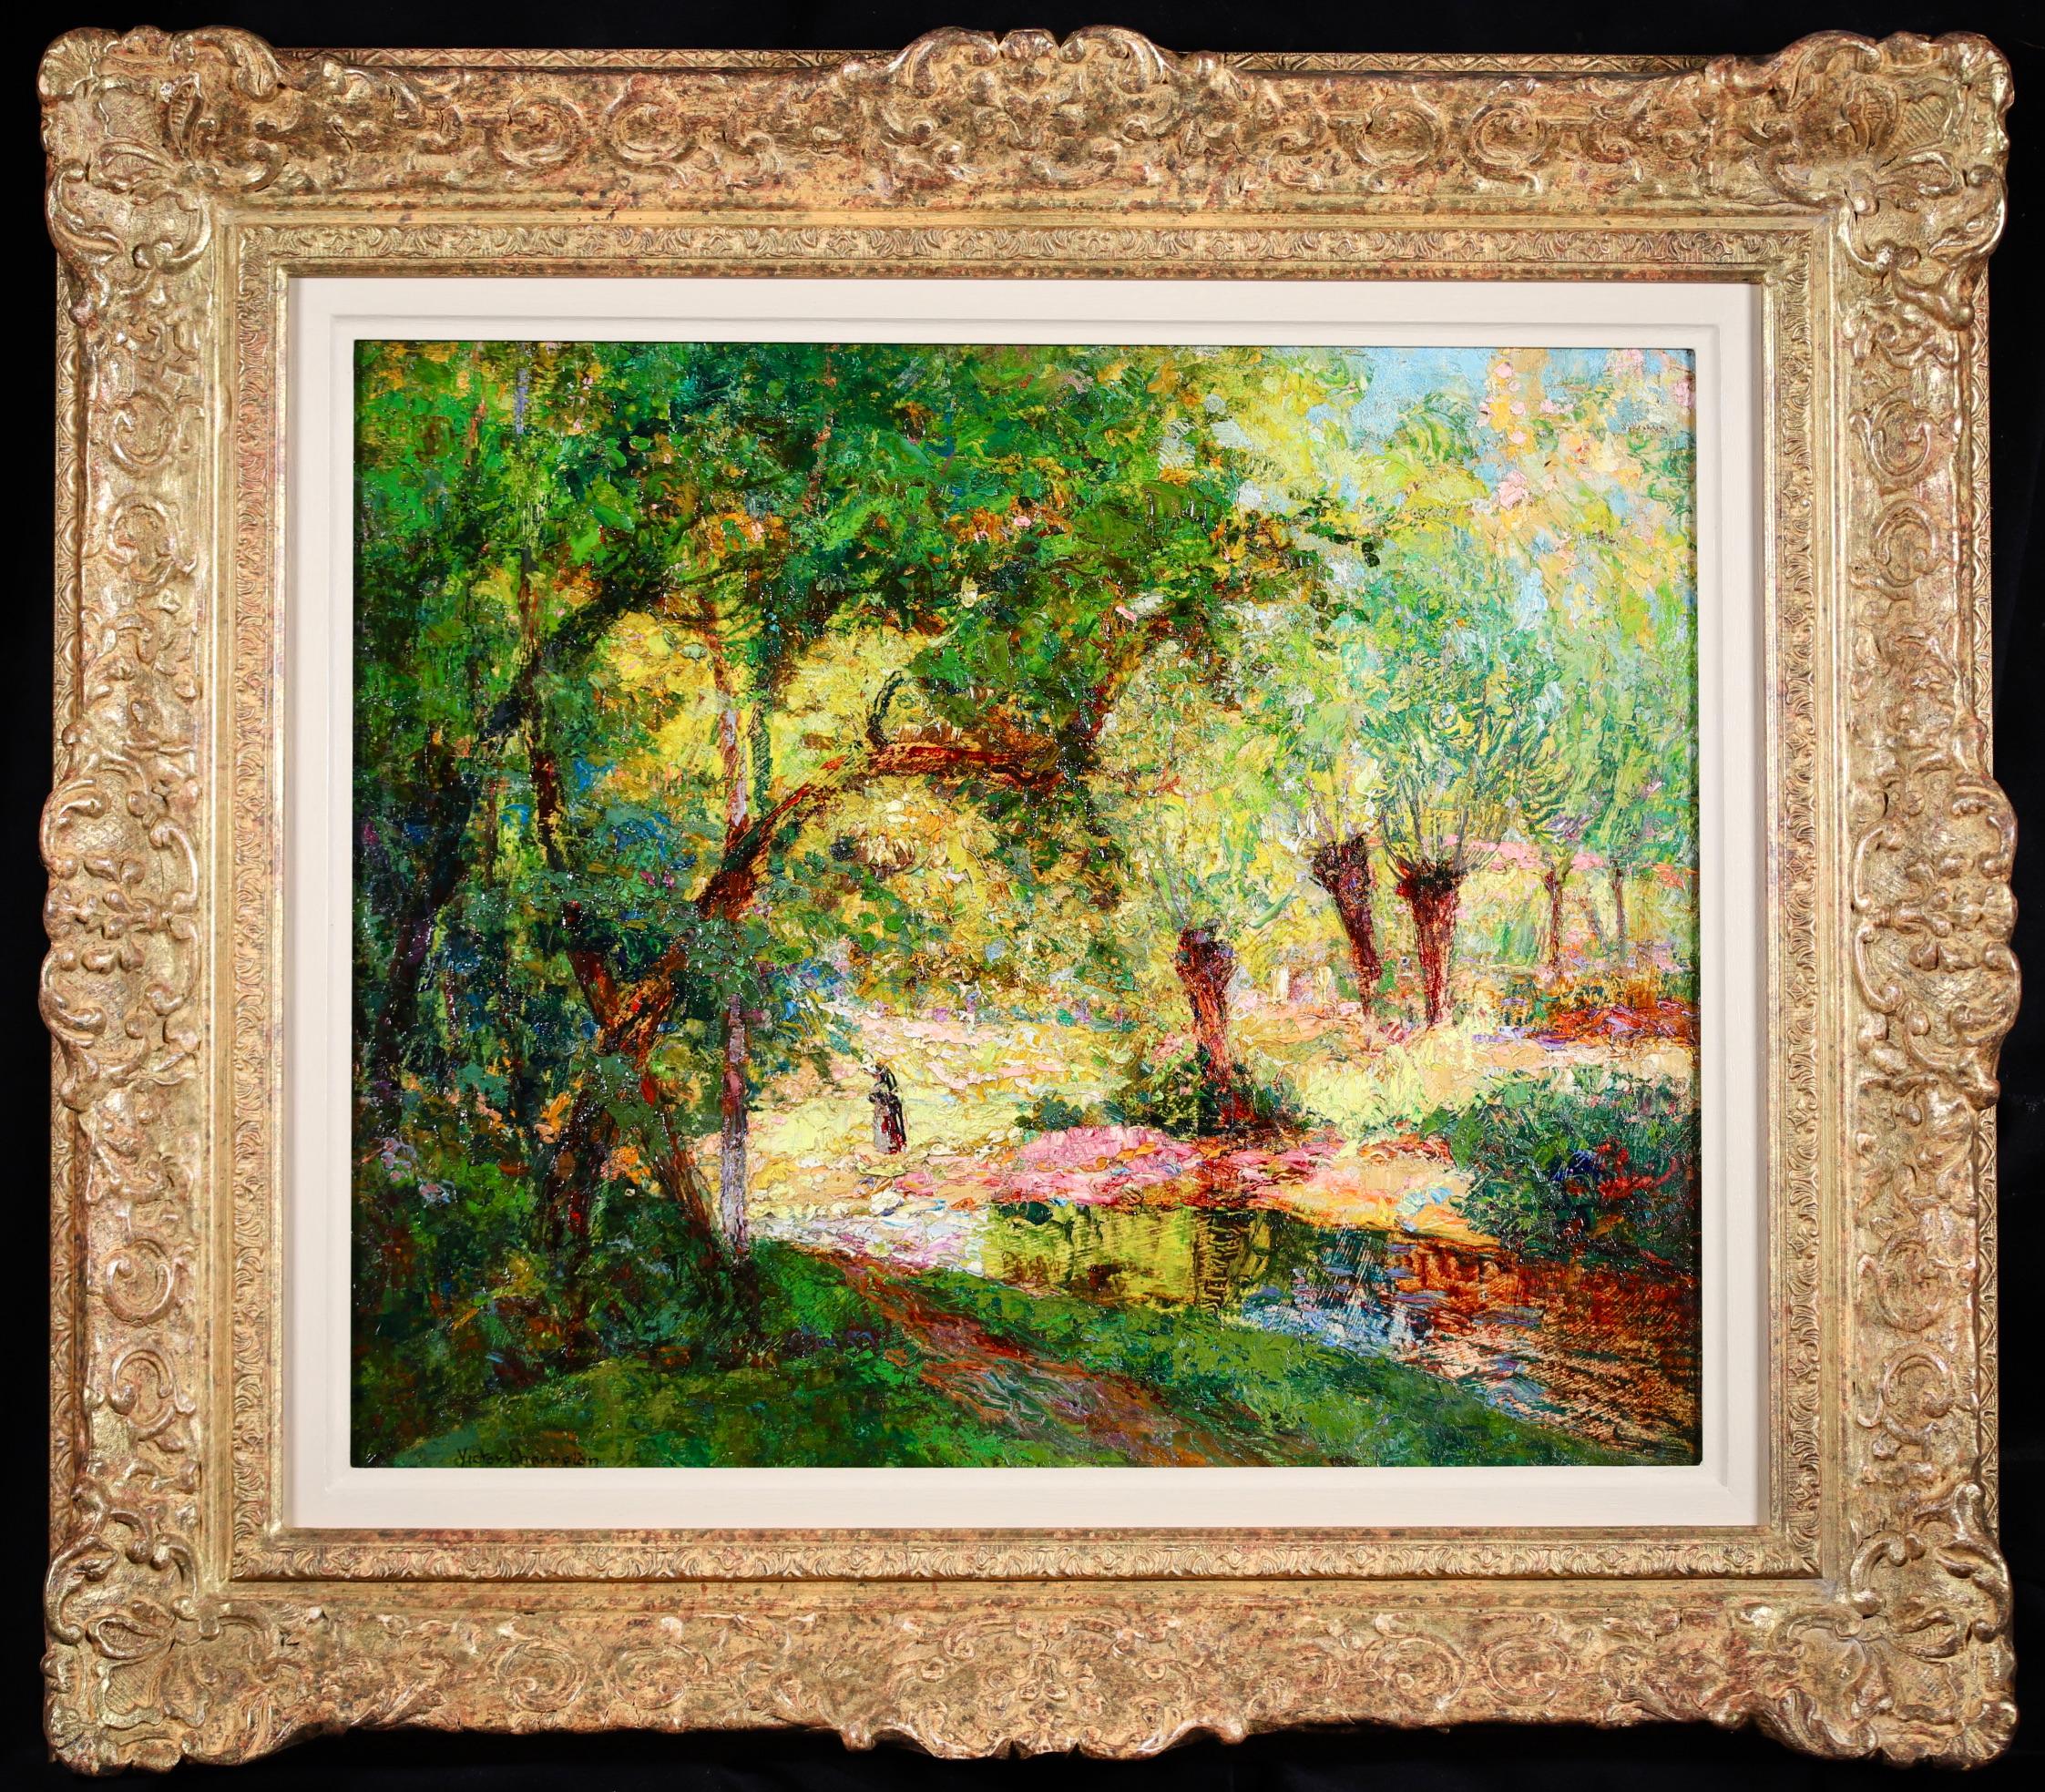 Signierte Figur in Landschaft Öl auf Karton circa 1910 von Französisch Post-Impressionist Maler Victor Charreton. Das Werk zeigt eine einsame Figur, die an einem hellen Sommertag in einem Waldgebiet an einem Bach entlang spaziert. Das Werk ist